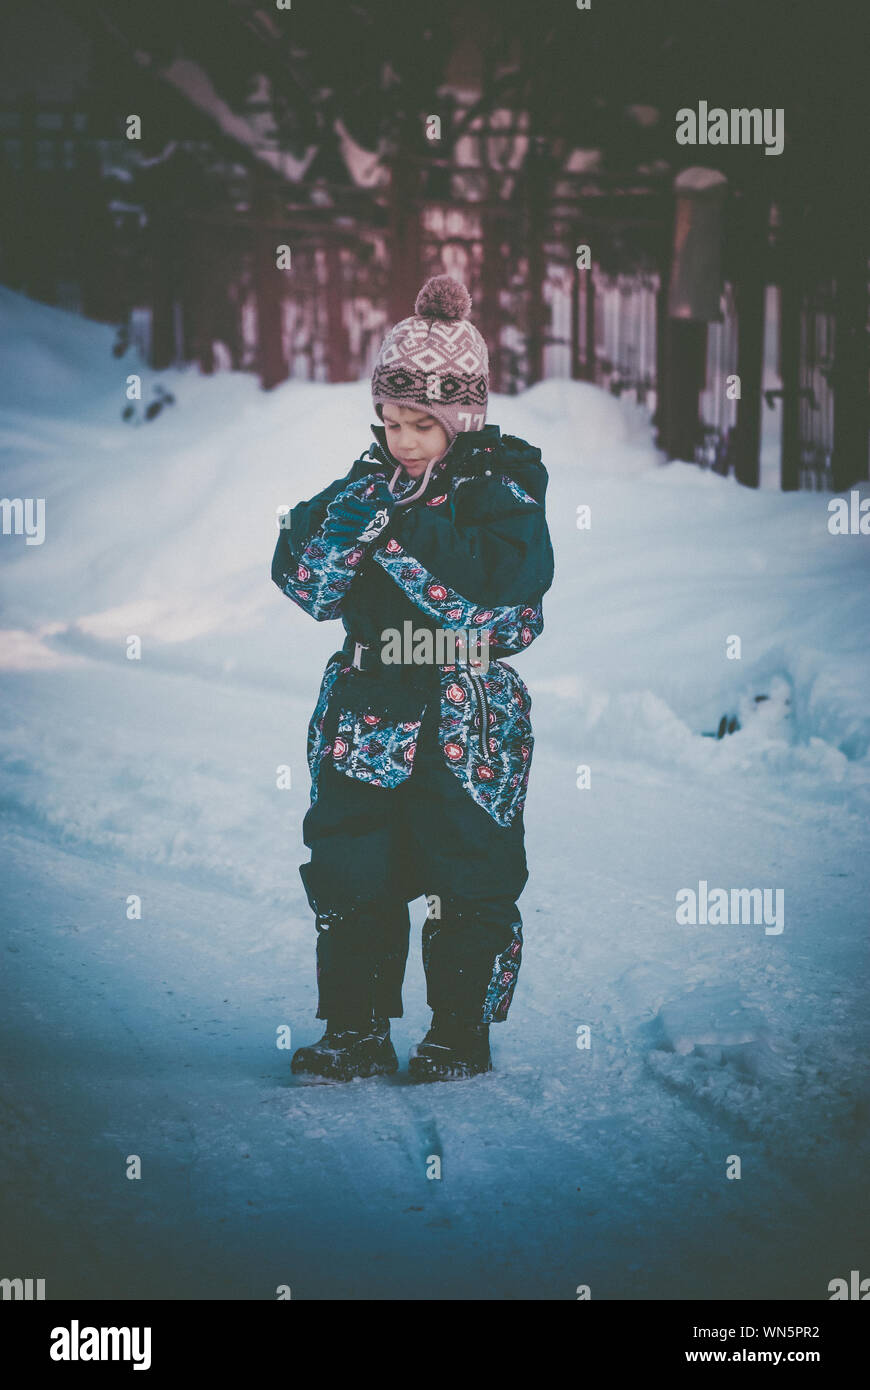 Chico lindo parado en campo nevado Foto de stock